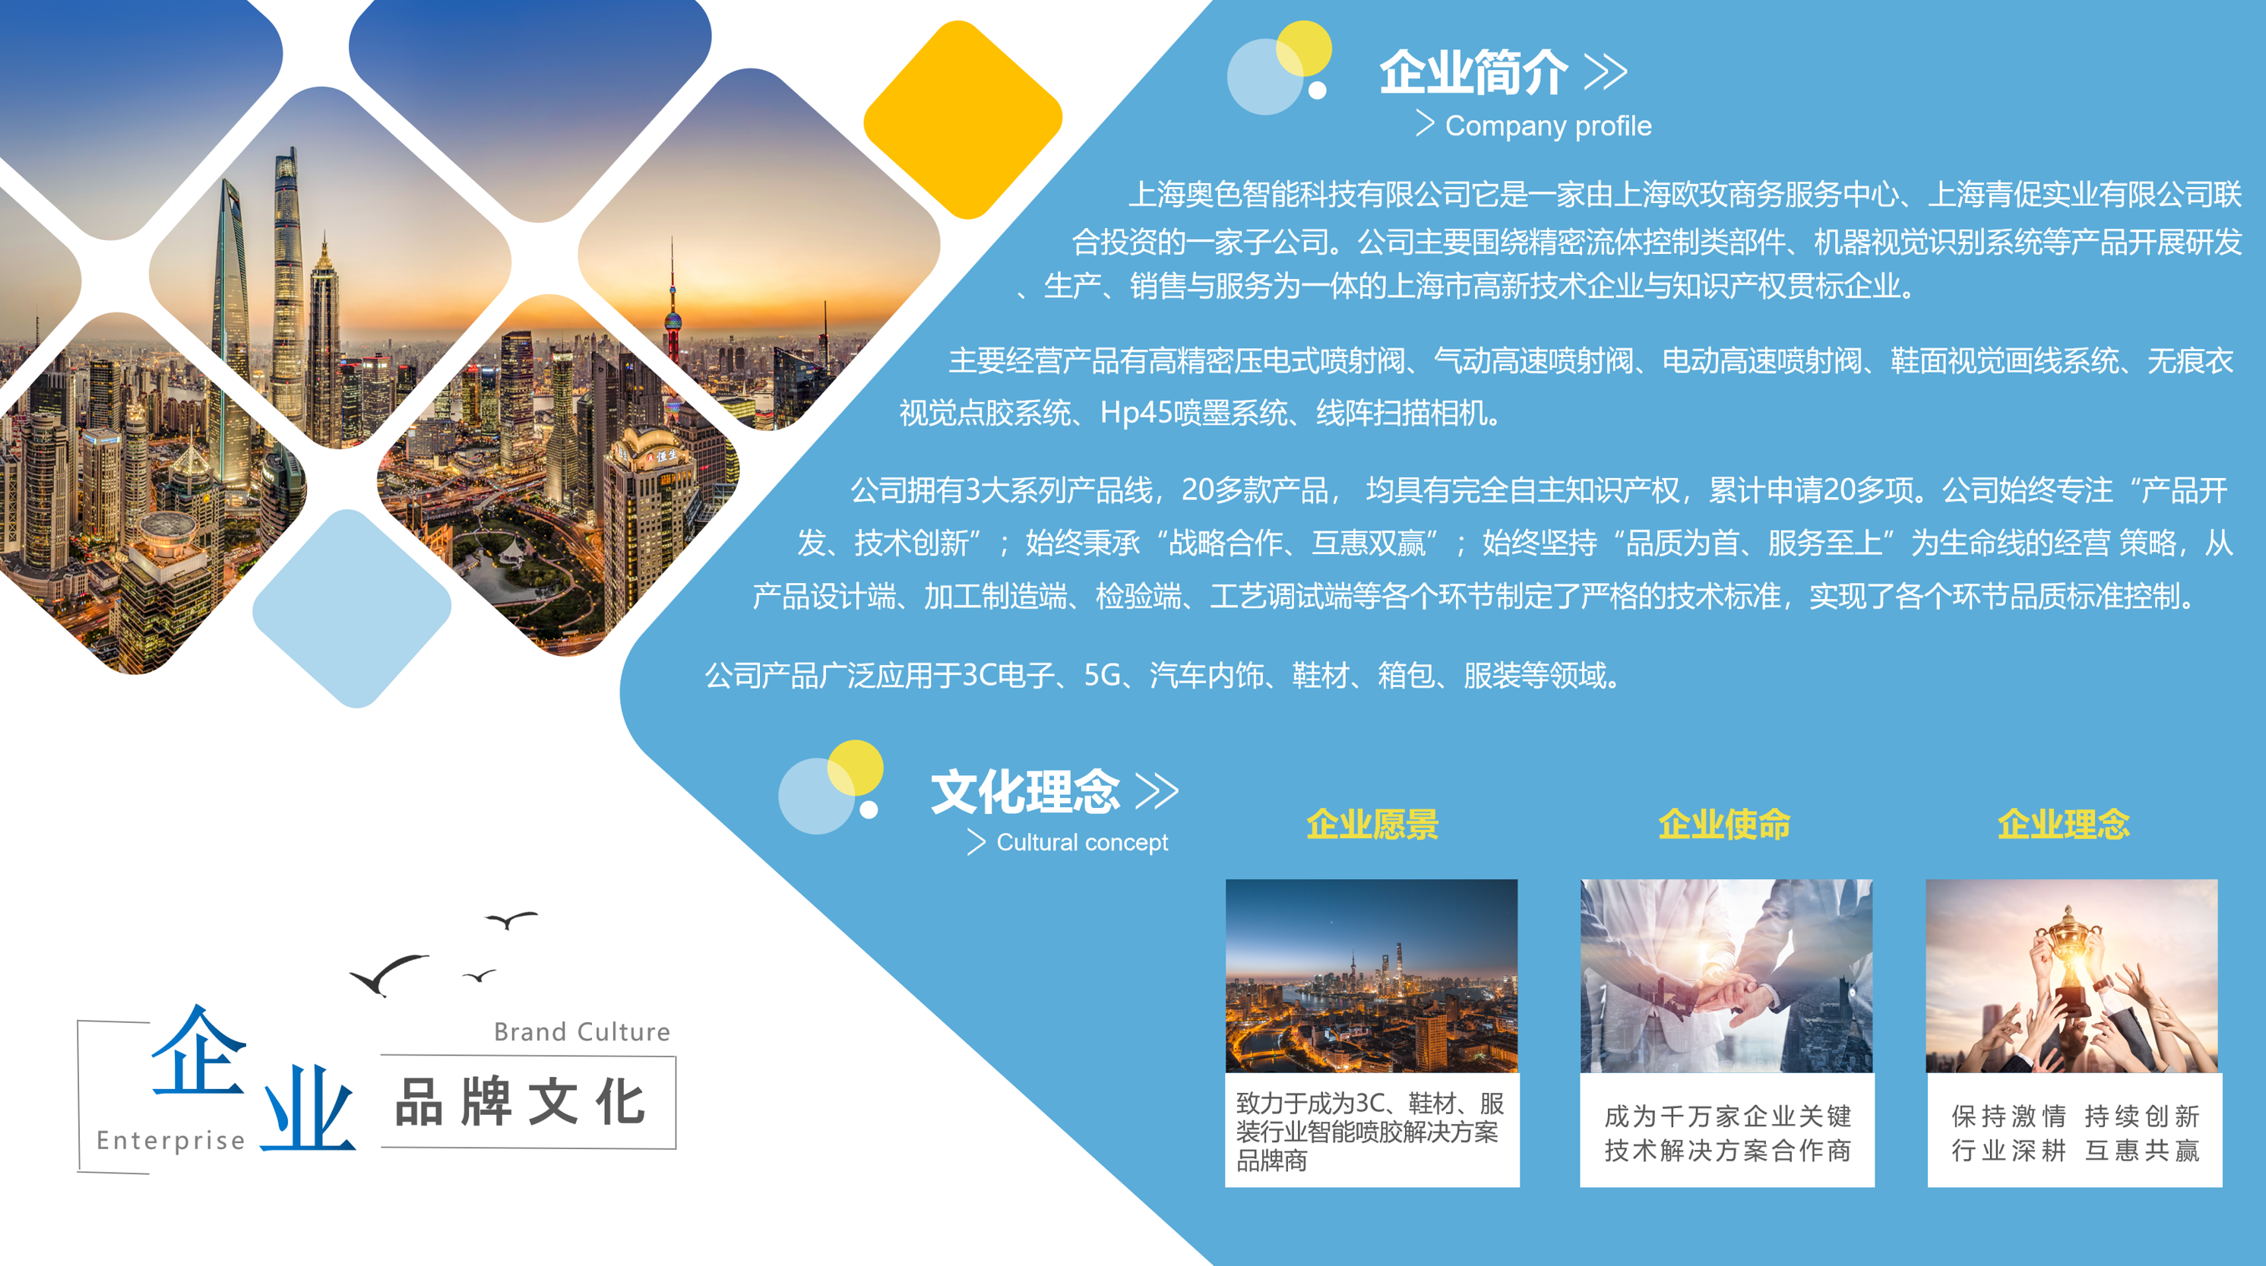 上海奧色科技企業文化